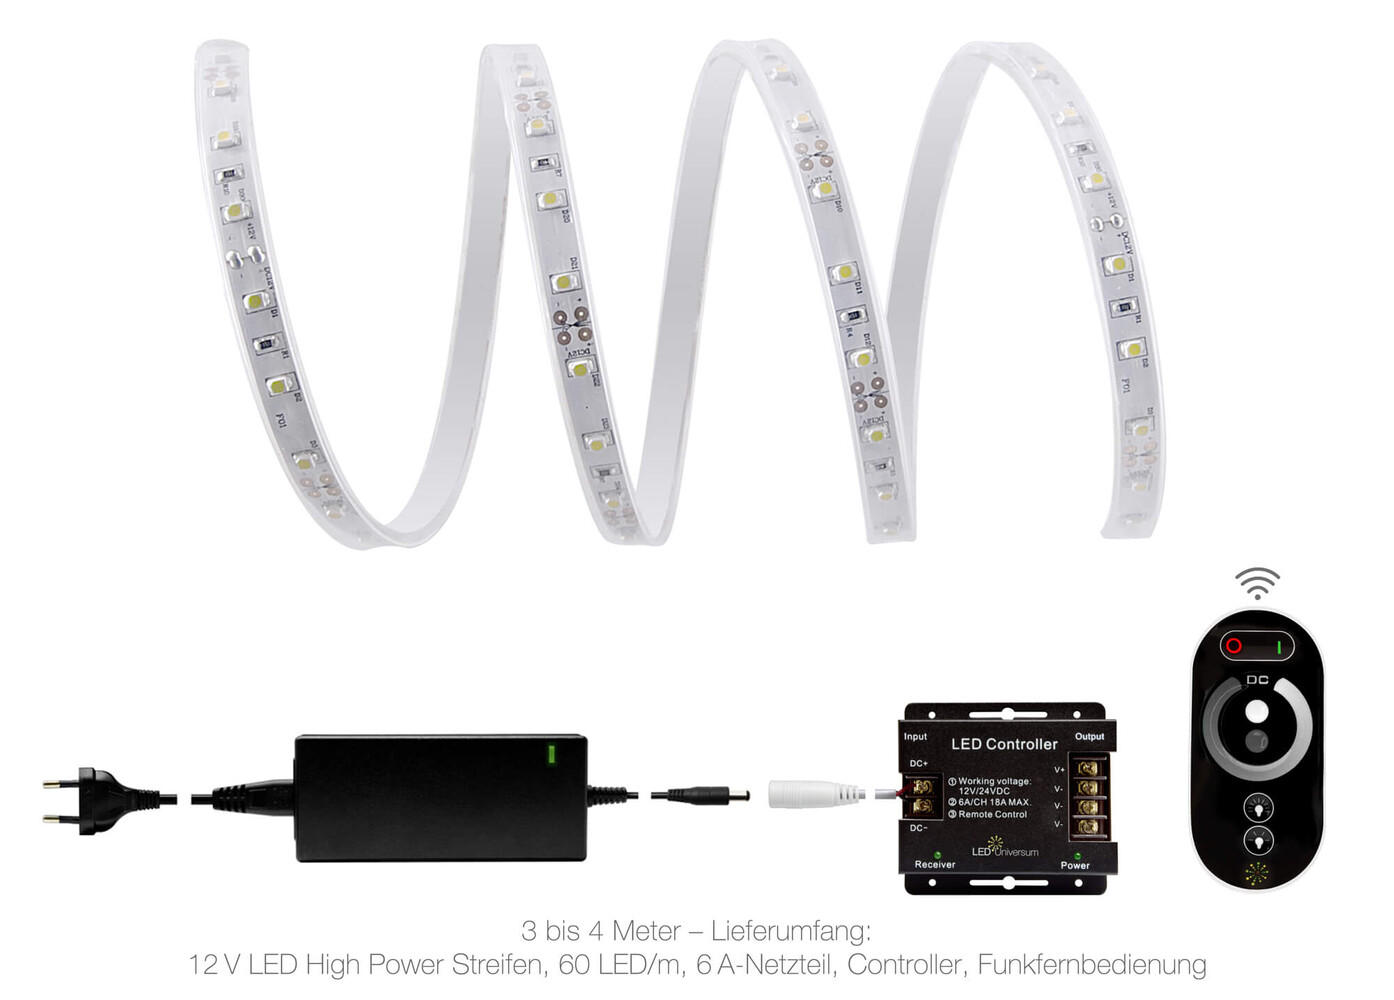 Hochleistungs-LED-Streifen von LED Universum mit Professional 12V und kaltweißer Beleuchtung